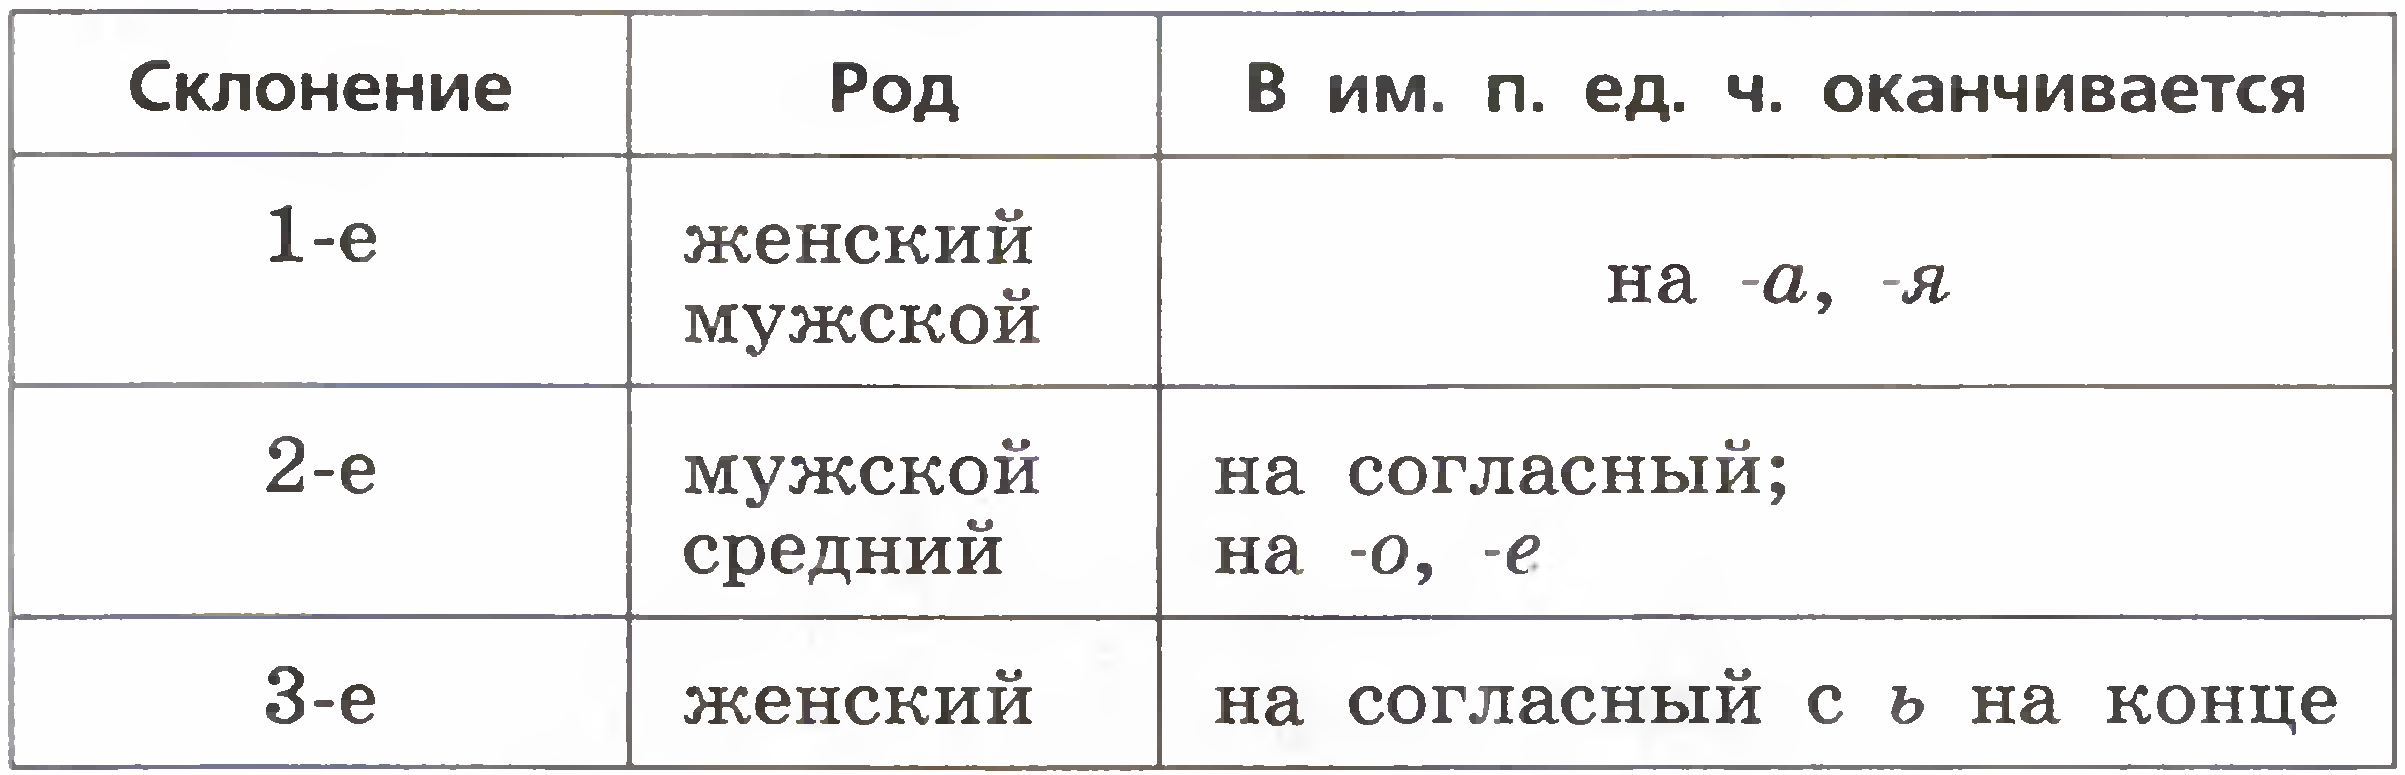 Склонение существительных 5 класс таблица в русском языке